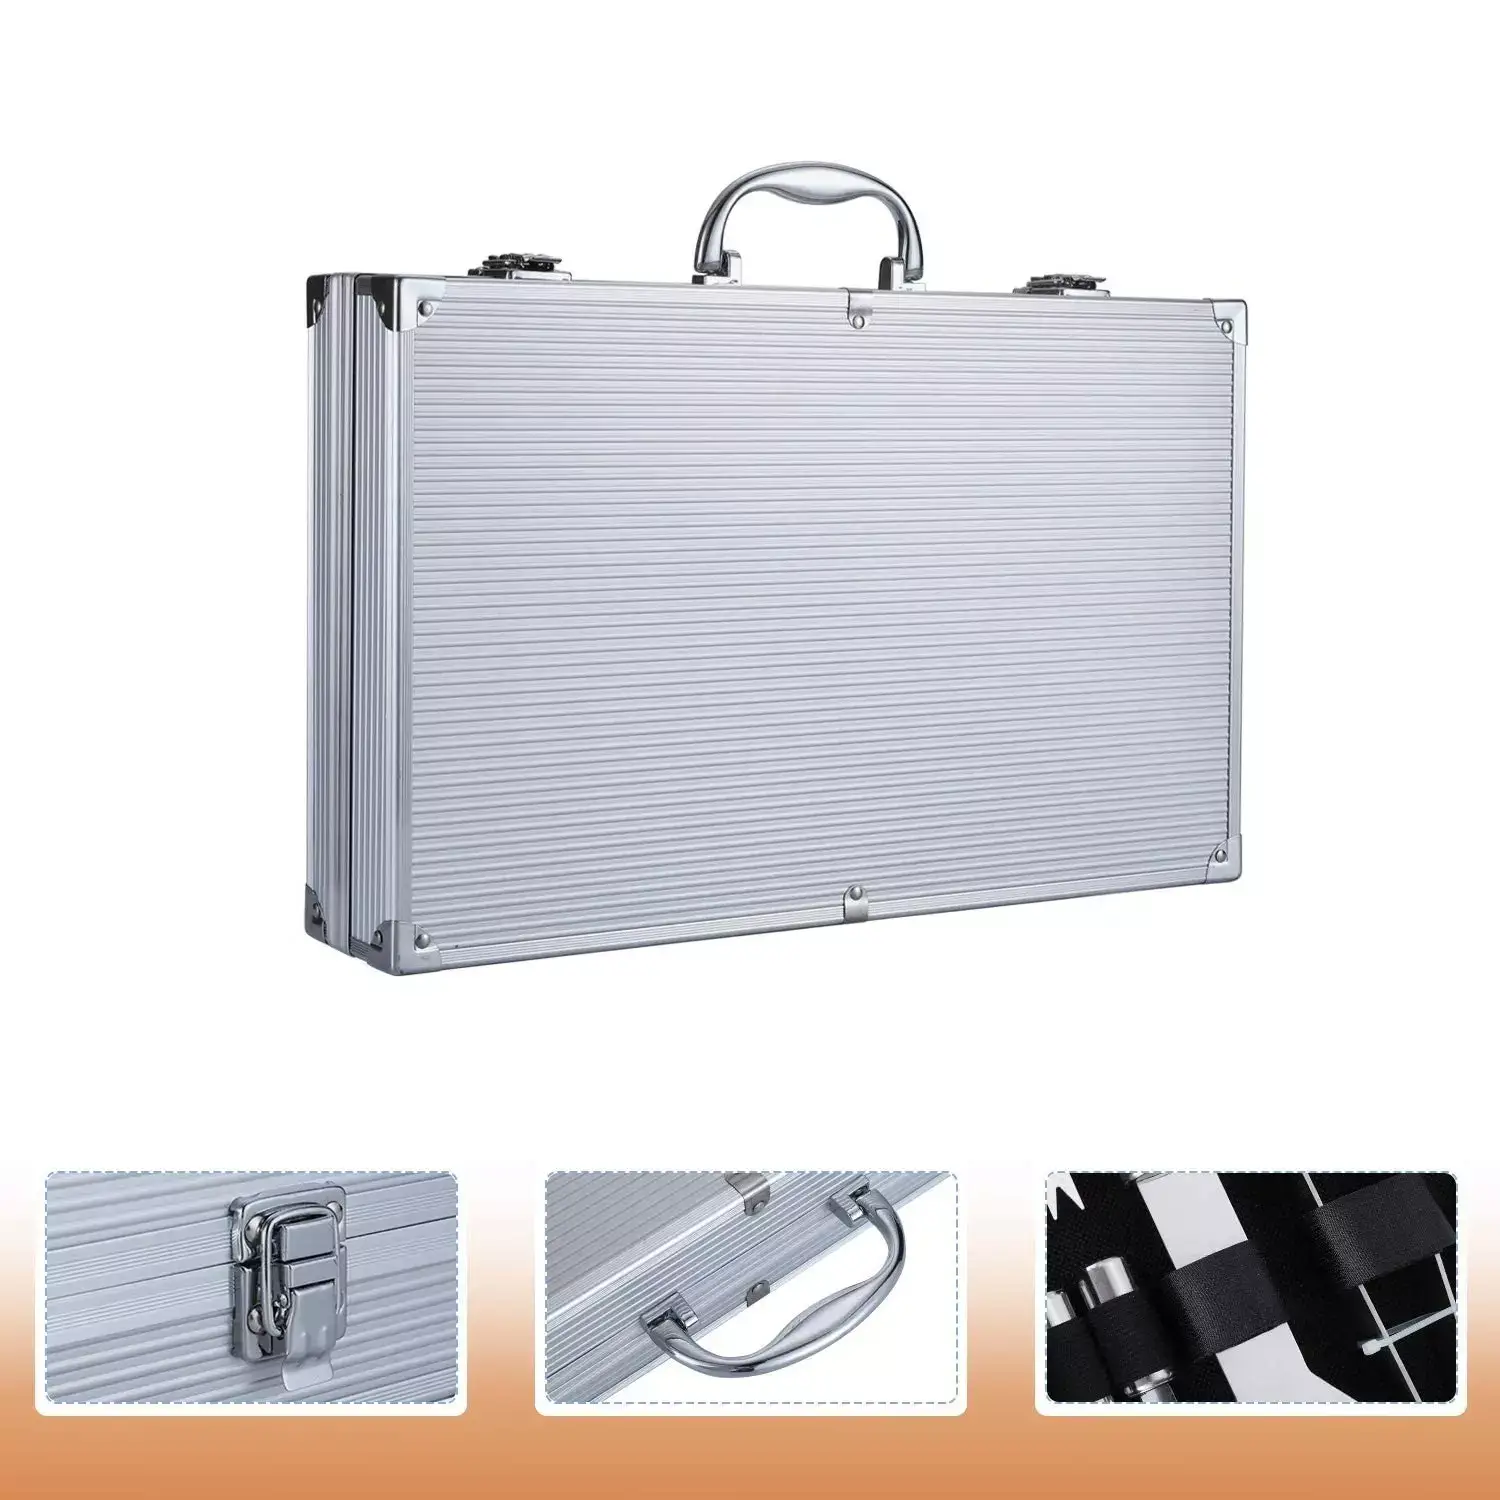 Набор инструментов Amiro Grill Set AGS-032 для барбекю/гриля из нержавеющей стали в чемодане (32 предмета) - фото